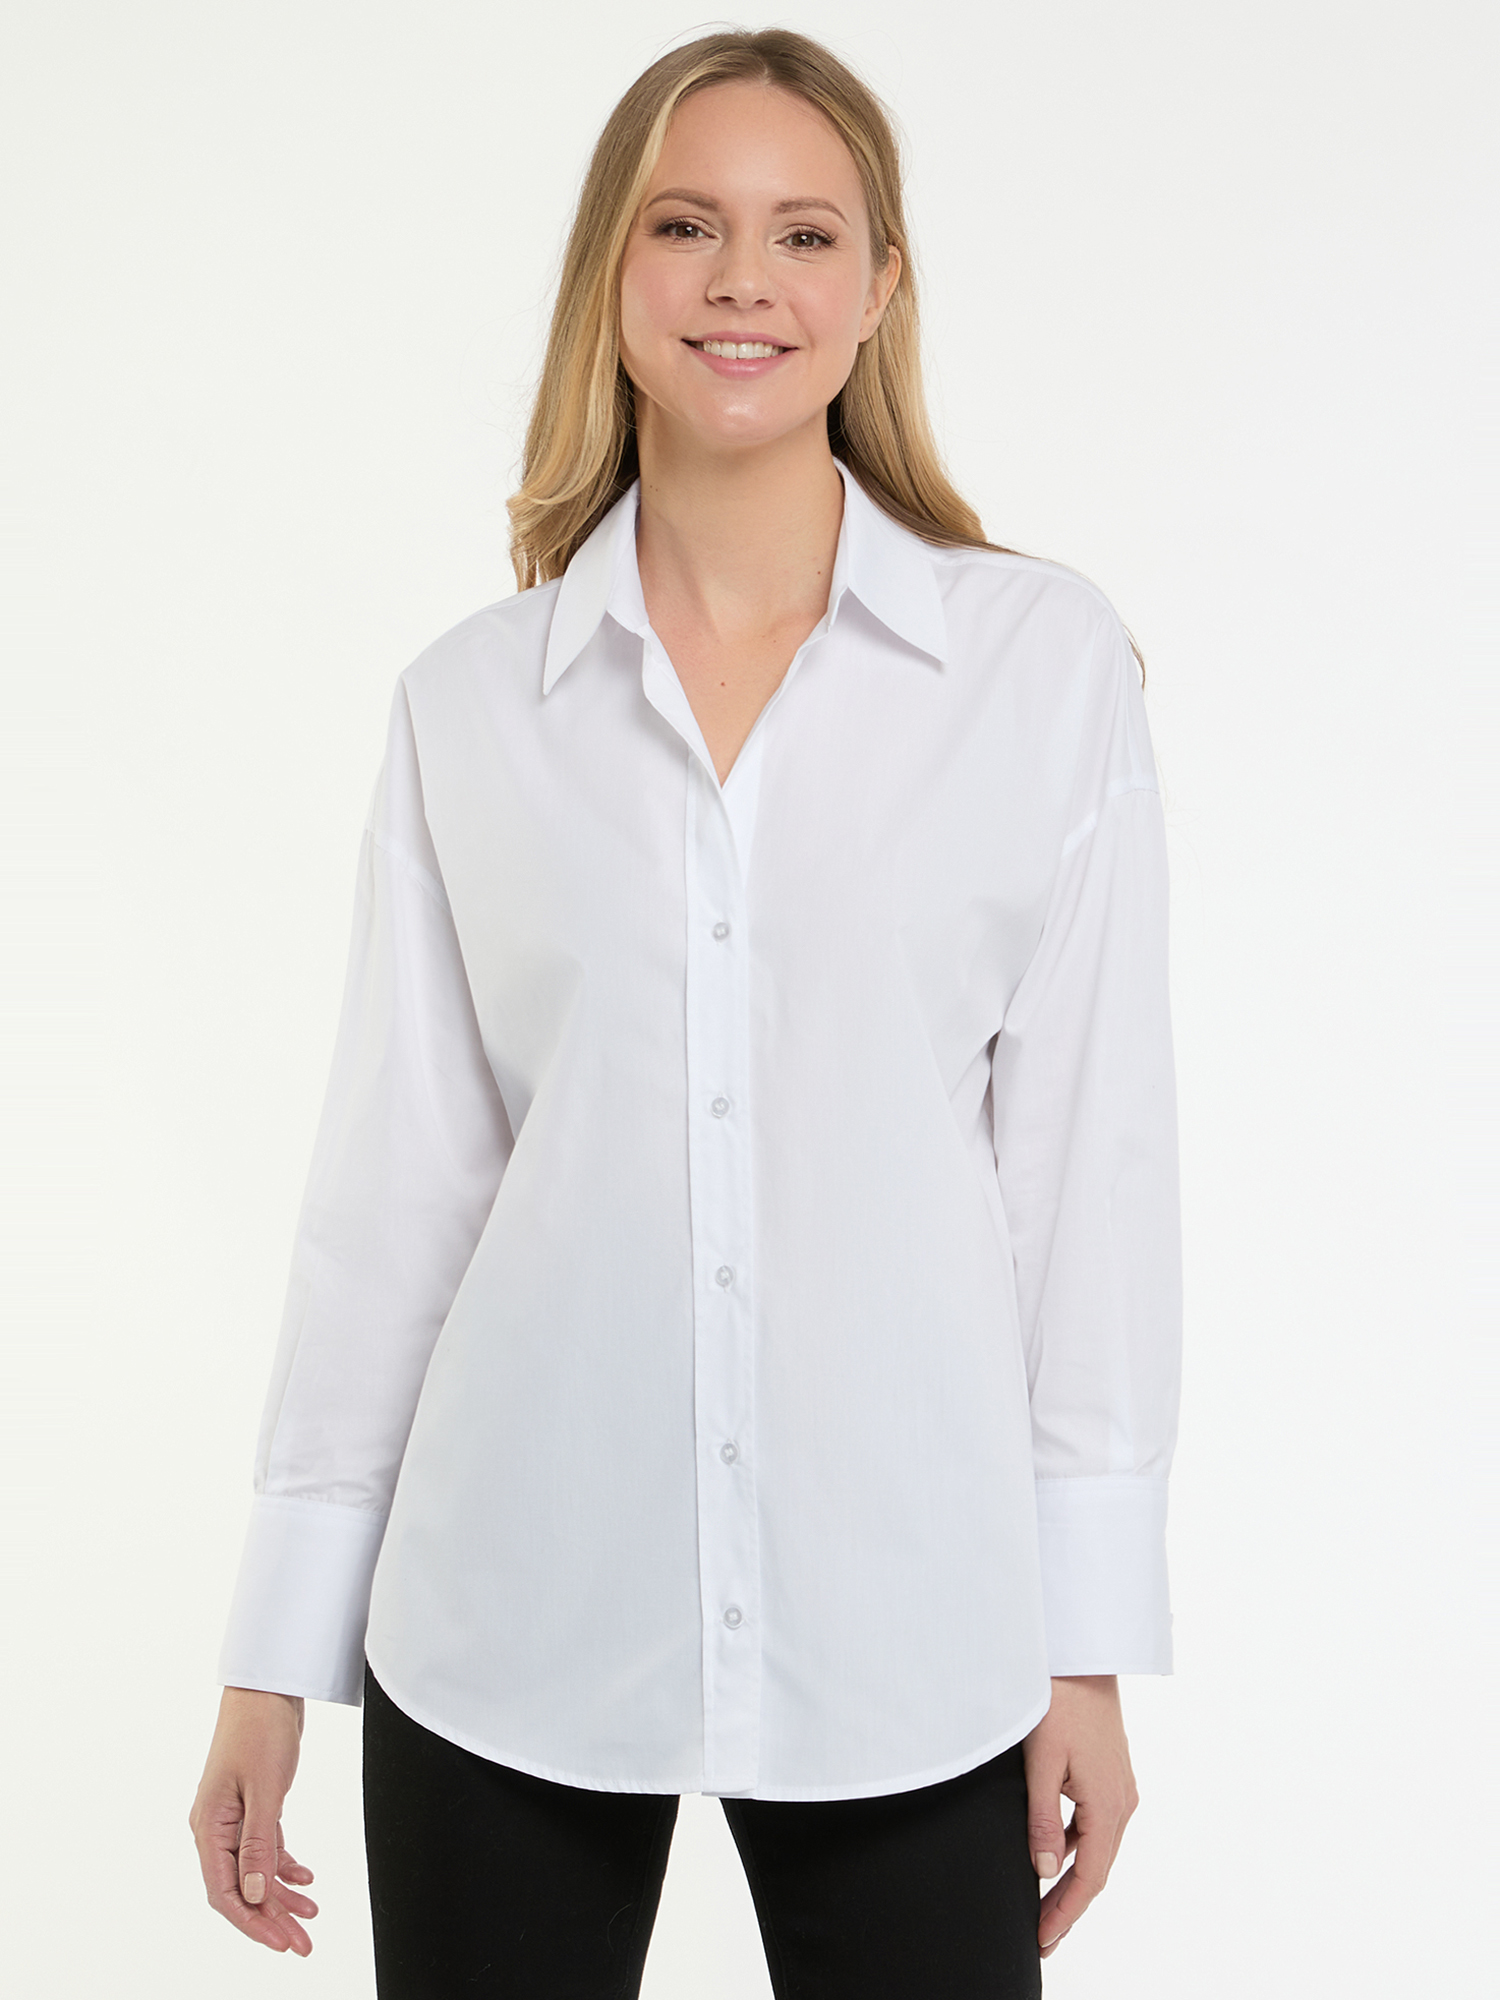 Рубашка женская oodji 13K11035-1 белая 42 EU